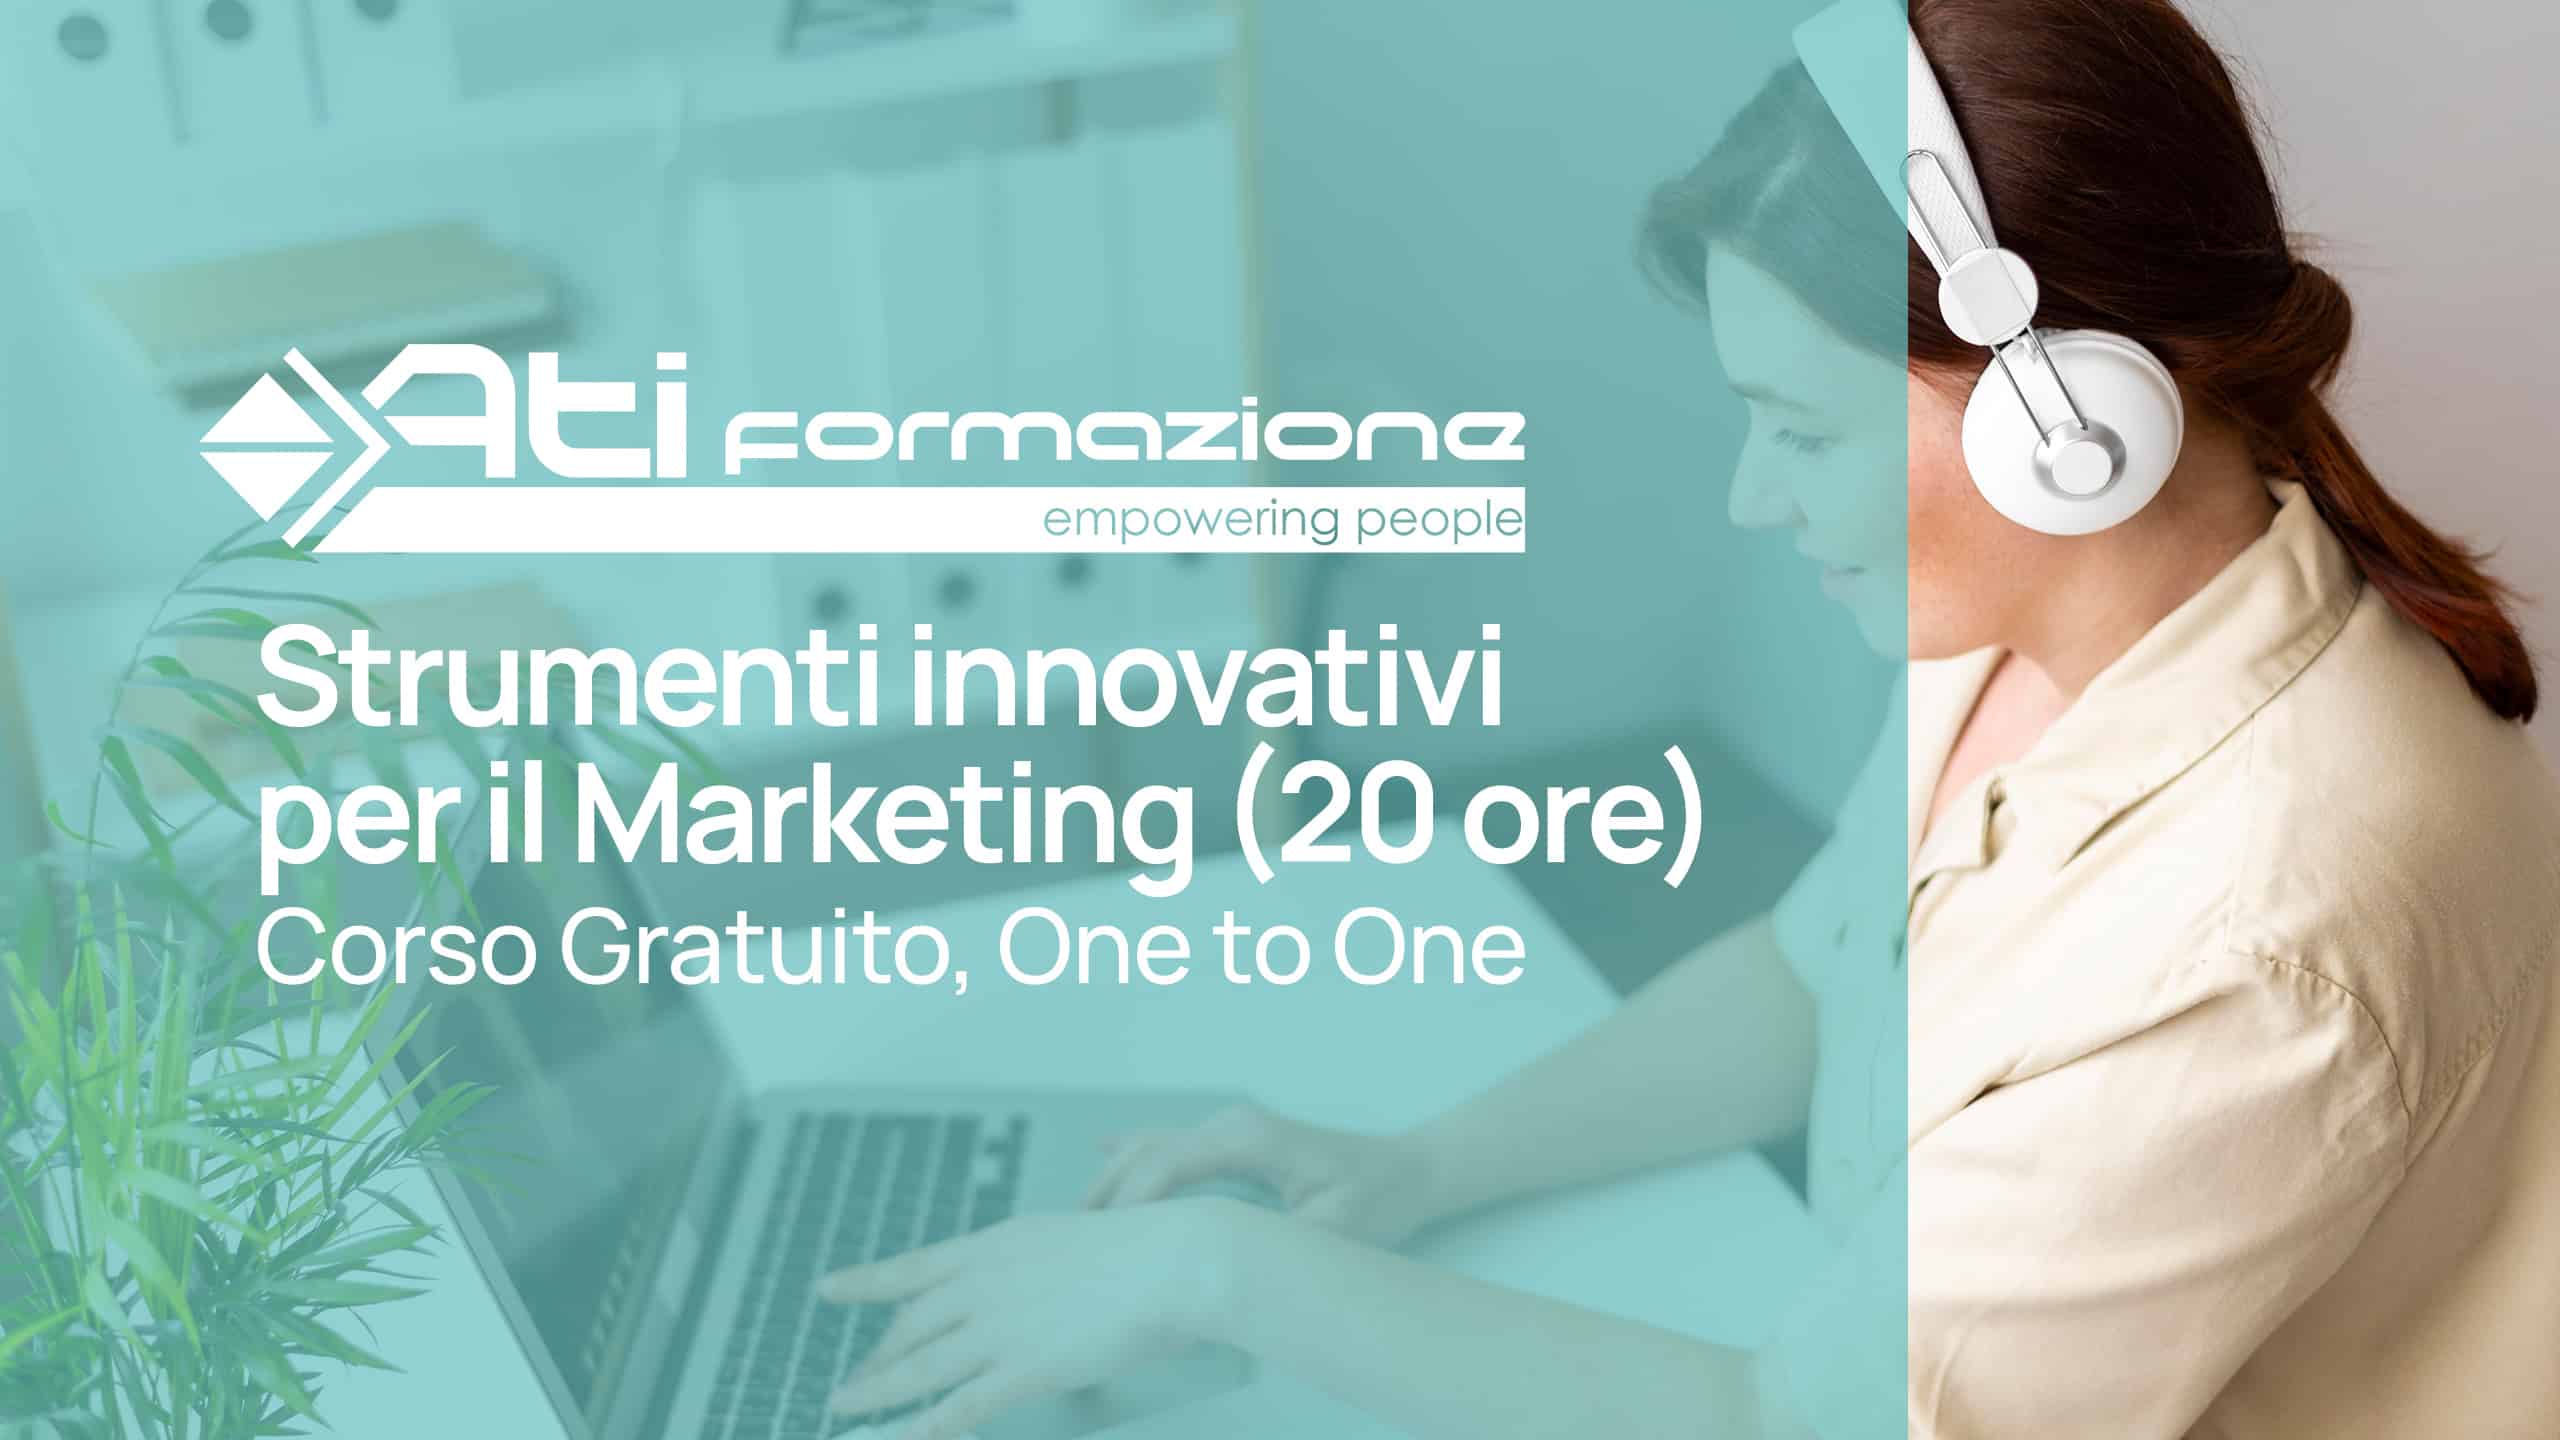 Corso Gratuito “Strumenti Innovativi per il Marketing” (20 ore), in modalità One to One